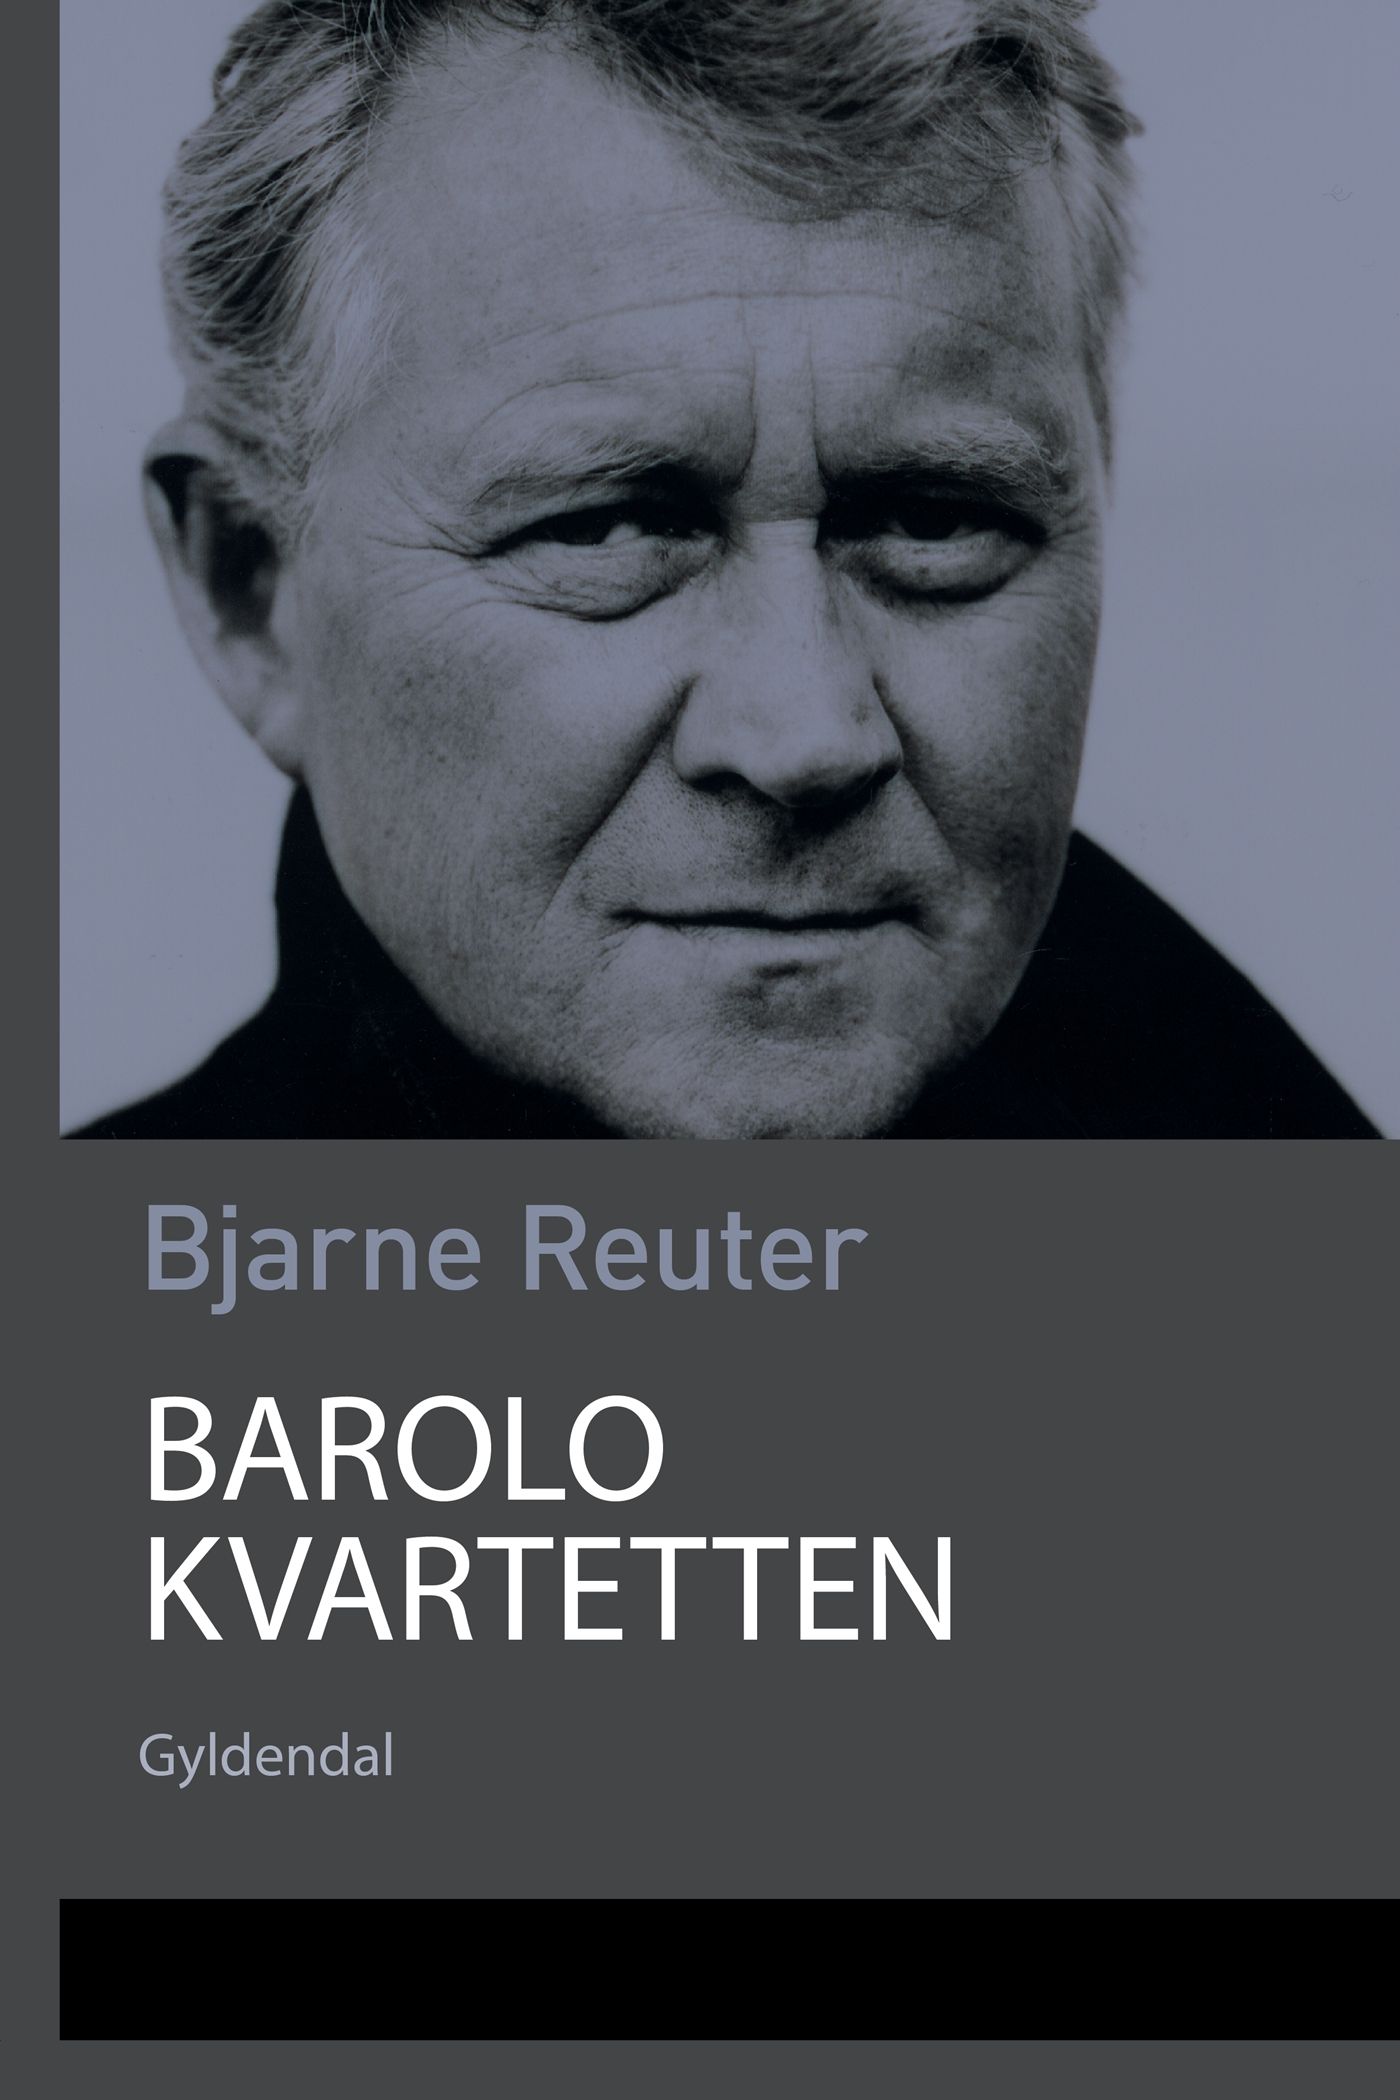 Barolo Kvartetten, e-bog af Bjarne Reuter